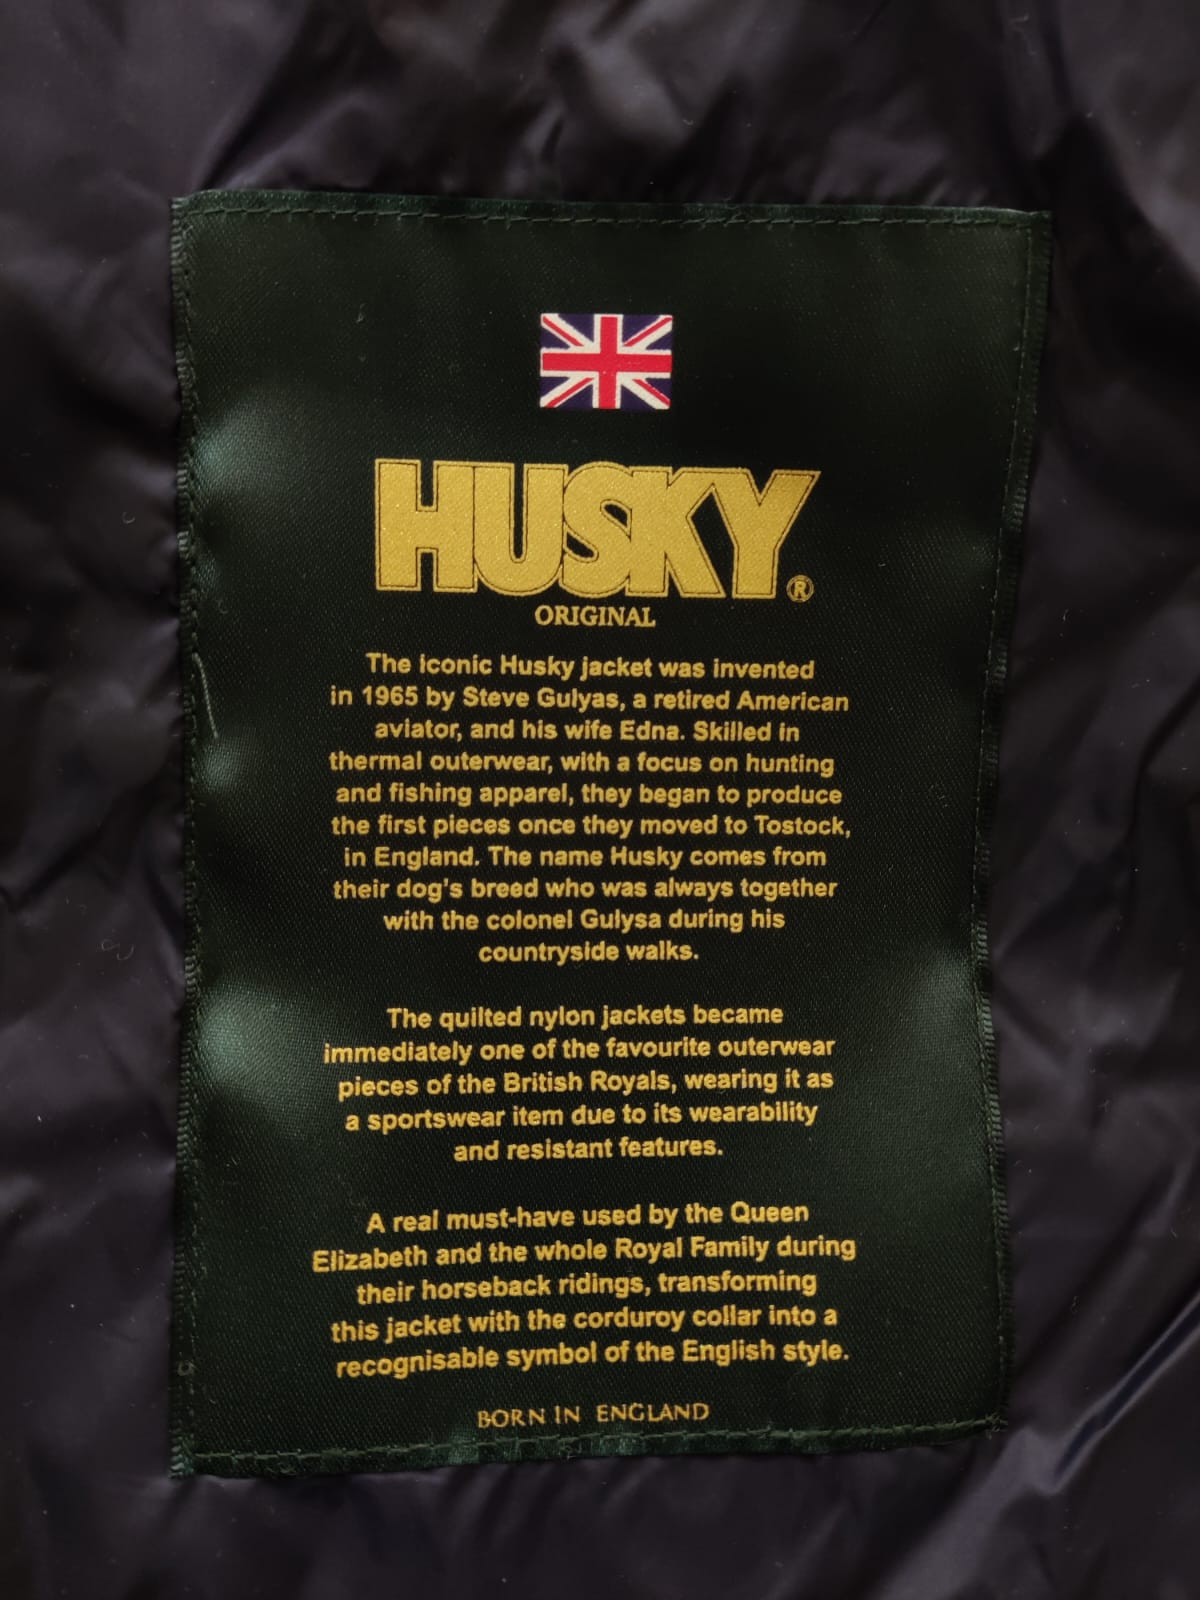 Scopri come indossare la giacca Husky. la royal jacket che ha